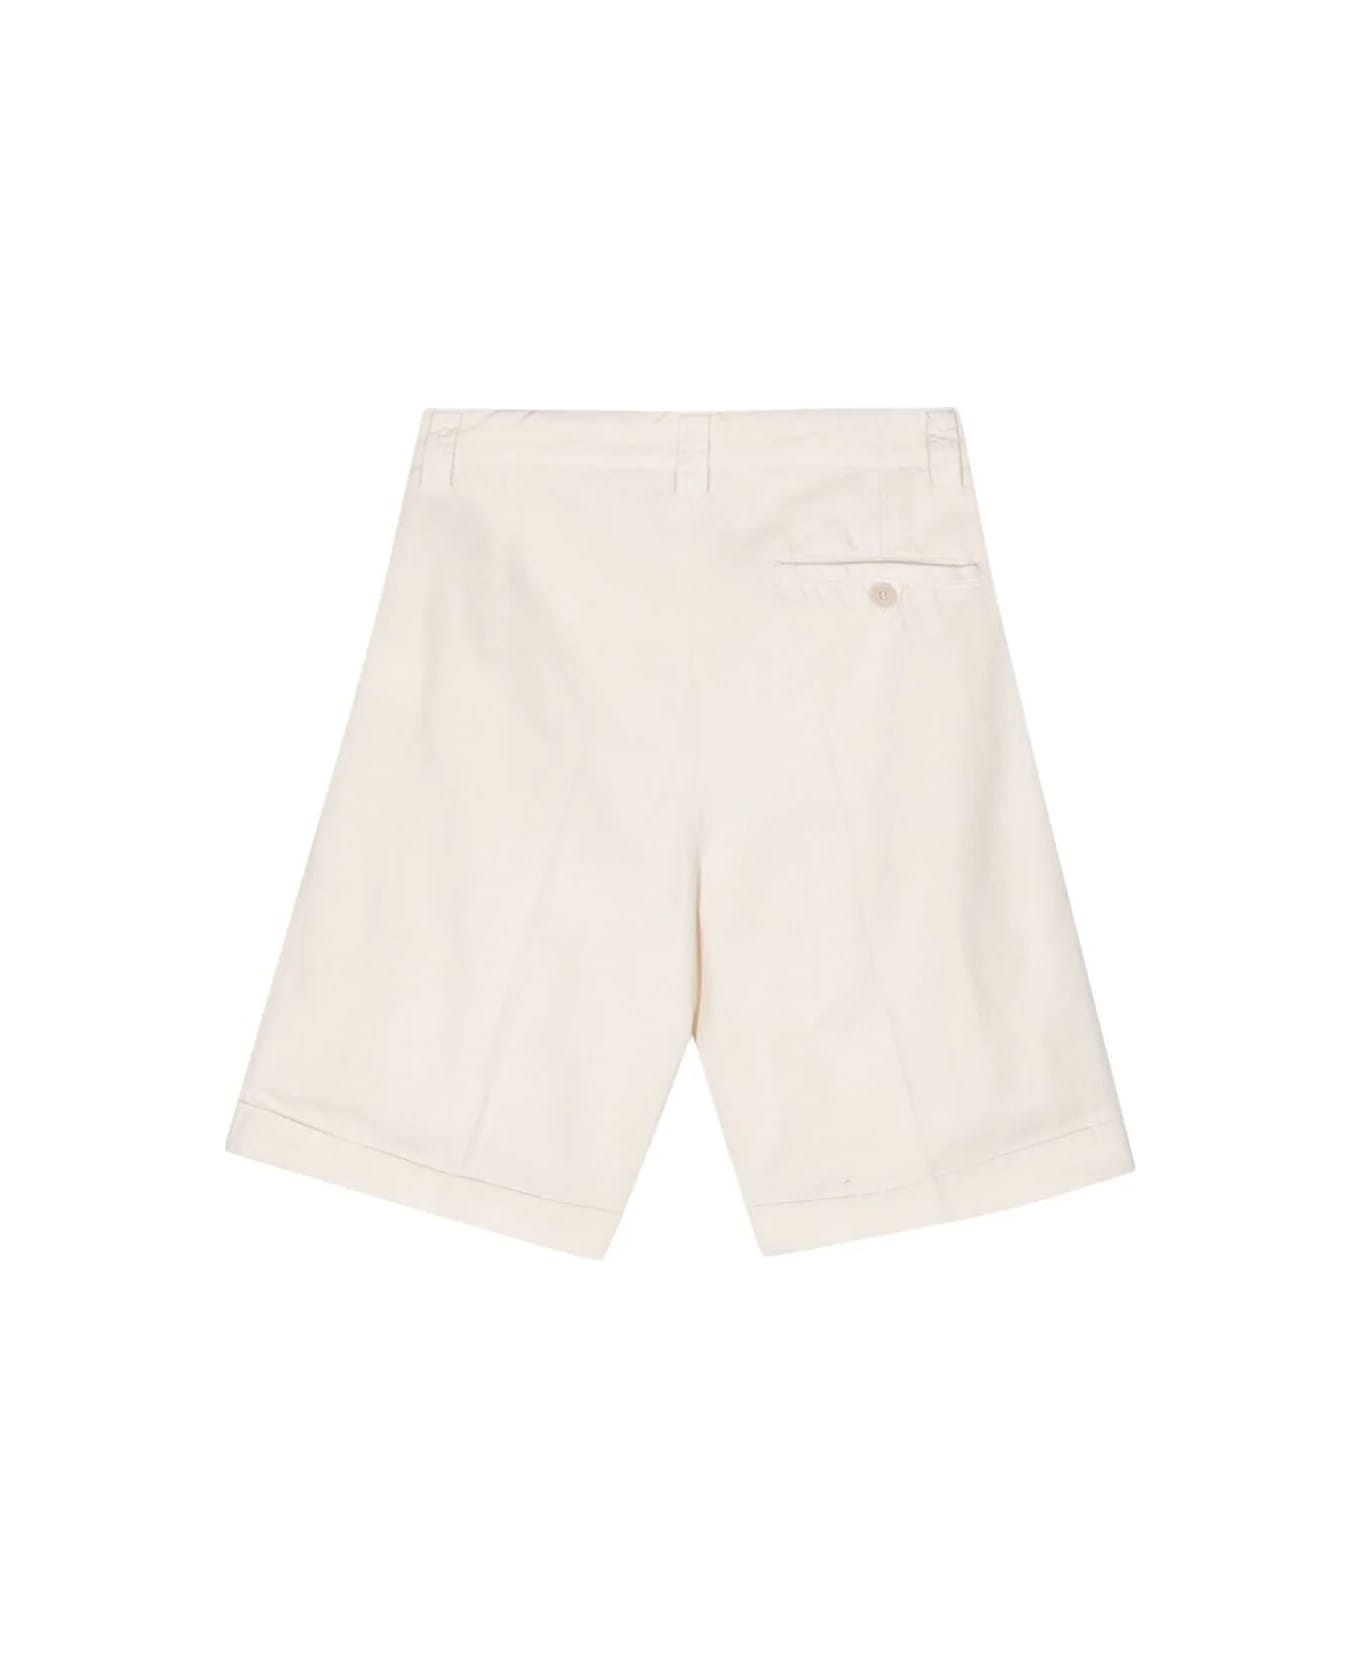 Aspesi Mod 0210 Shorts - Natural ショートパンツ